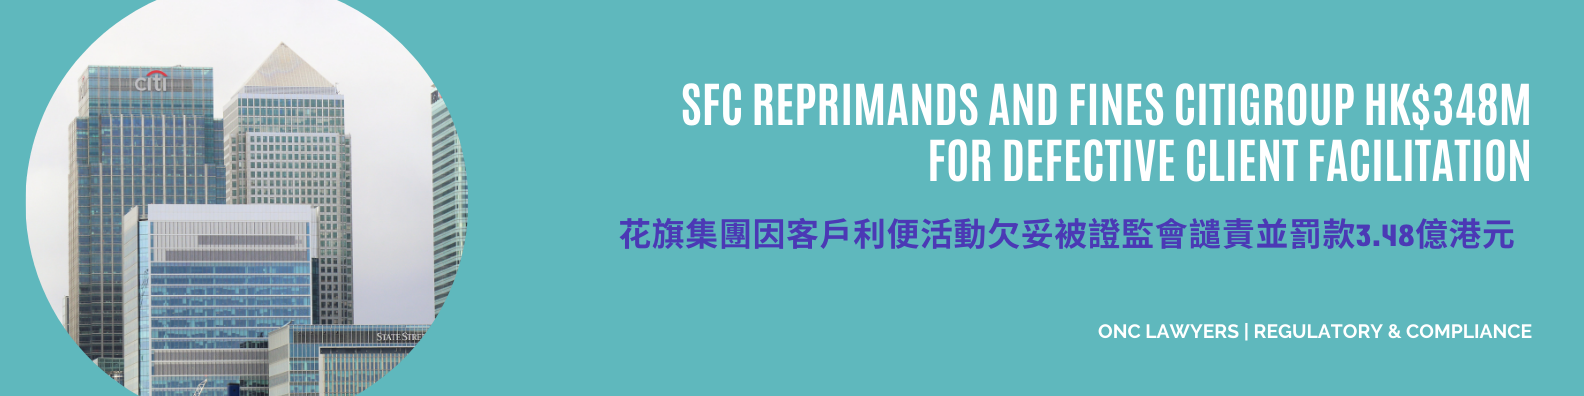 SFC reprimands and fines Citigroup HK$348M  for defective client facilitation